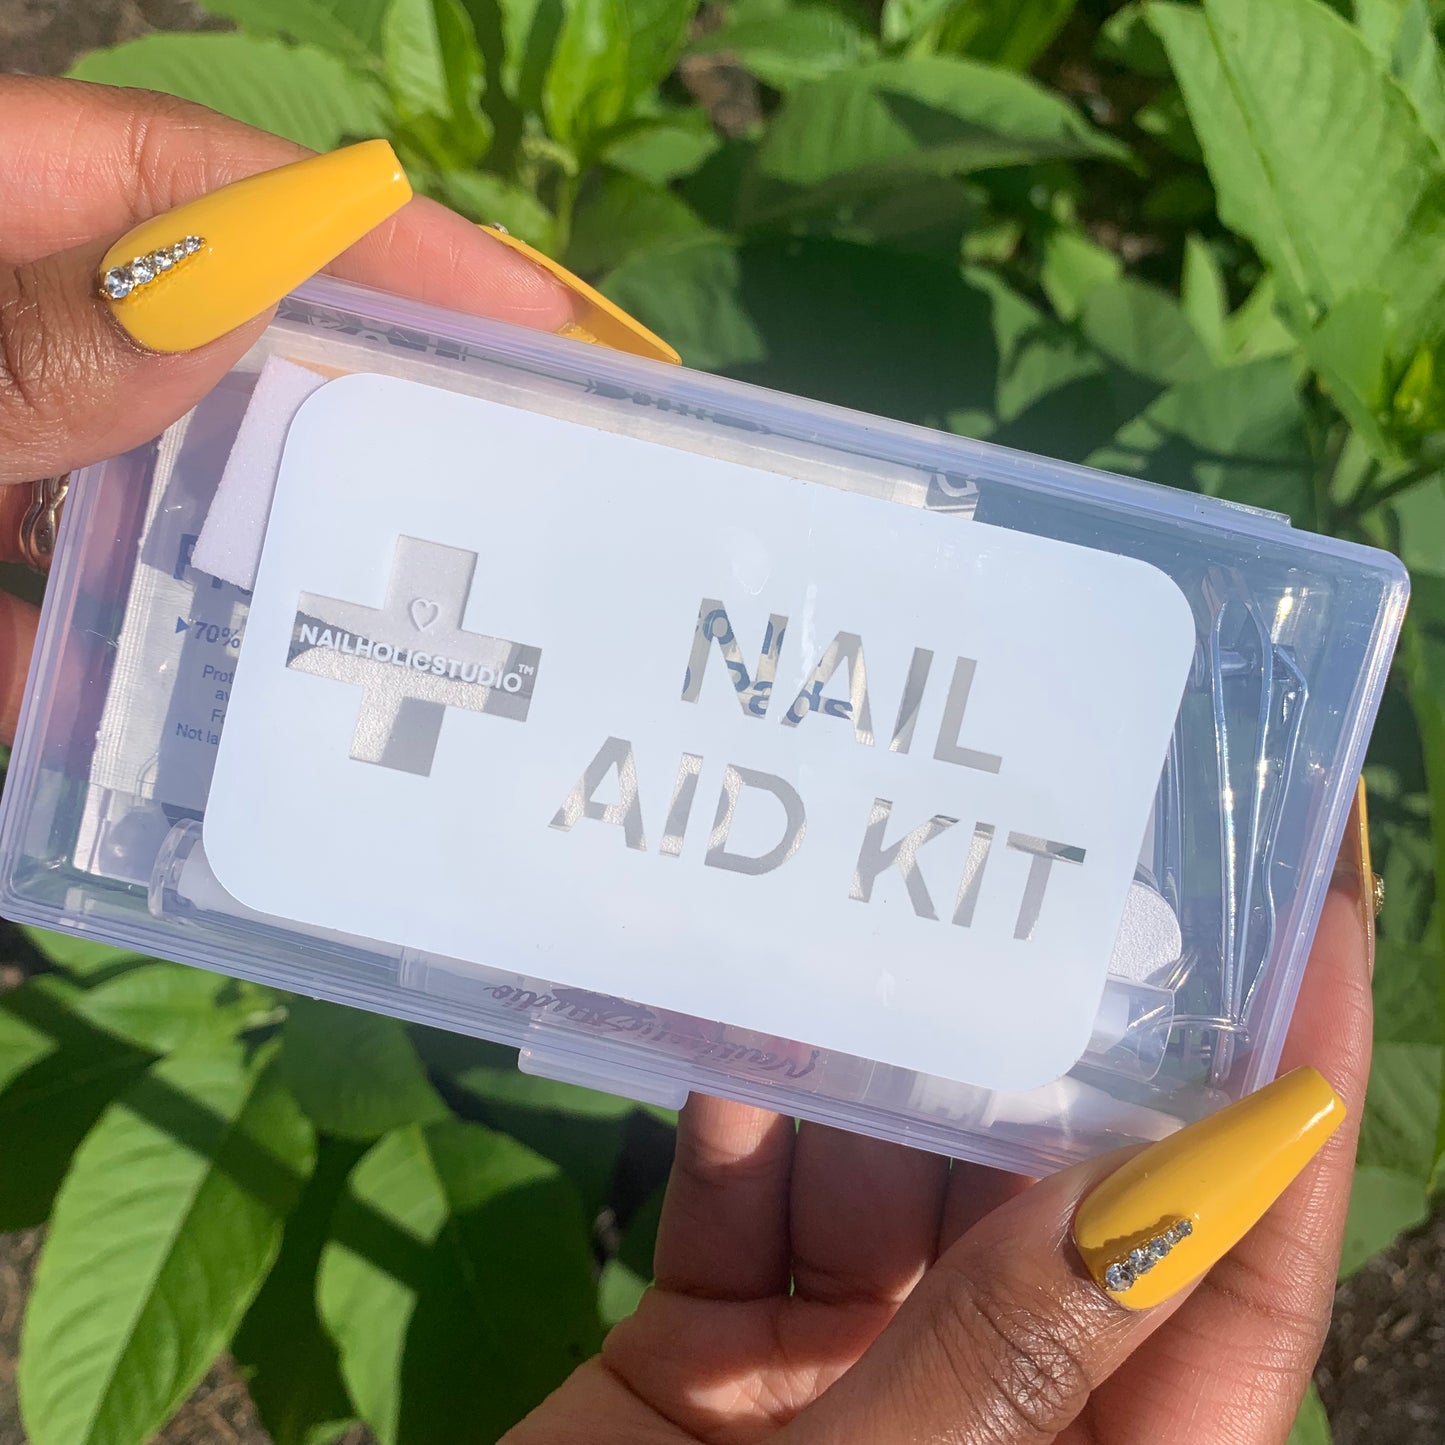 Nail-Aid Kit ♡ NailholicStudio